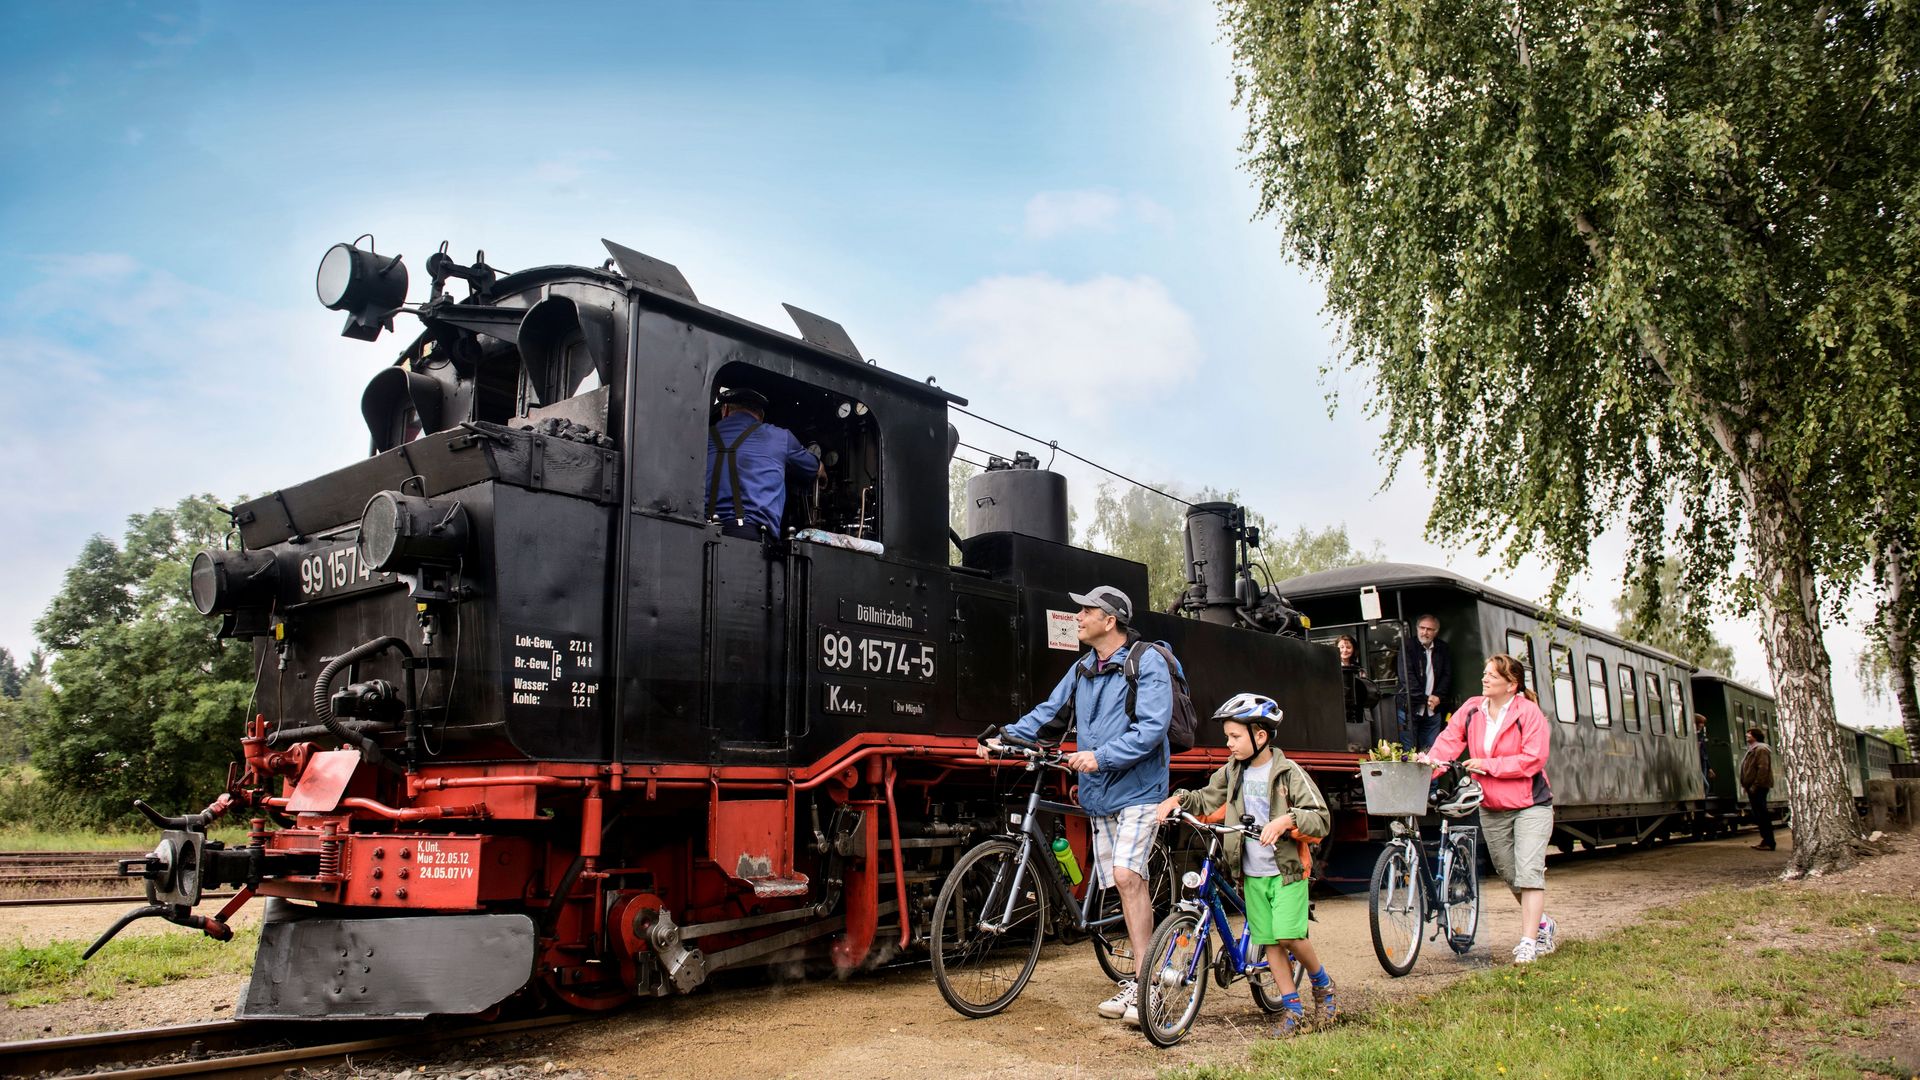 Une famille pose avec ses vélos devant un train à vapeur dans la région de Leipzig, par une belle journée d’été.